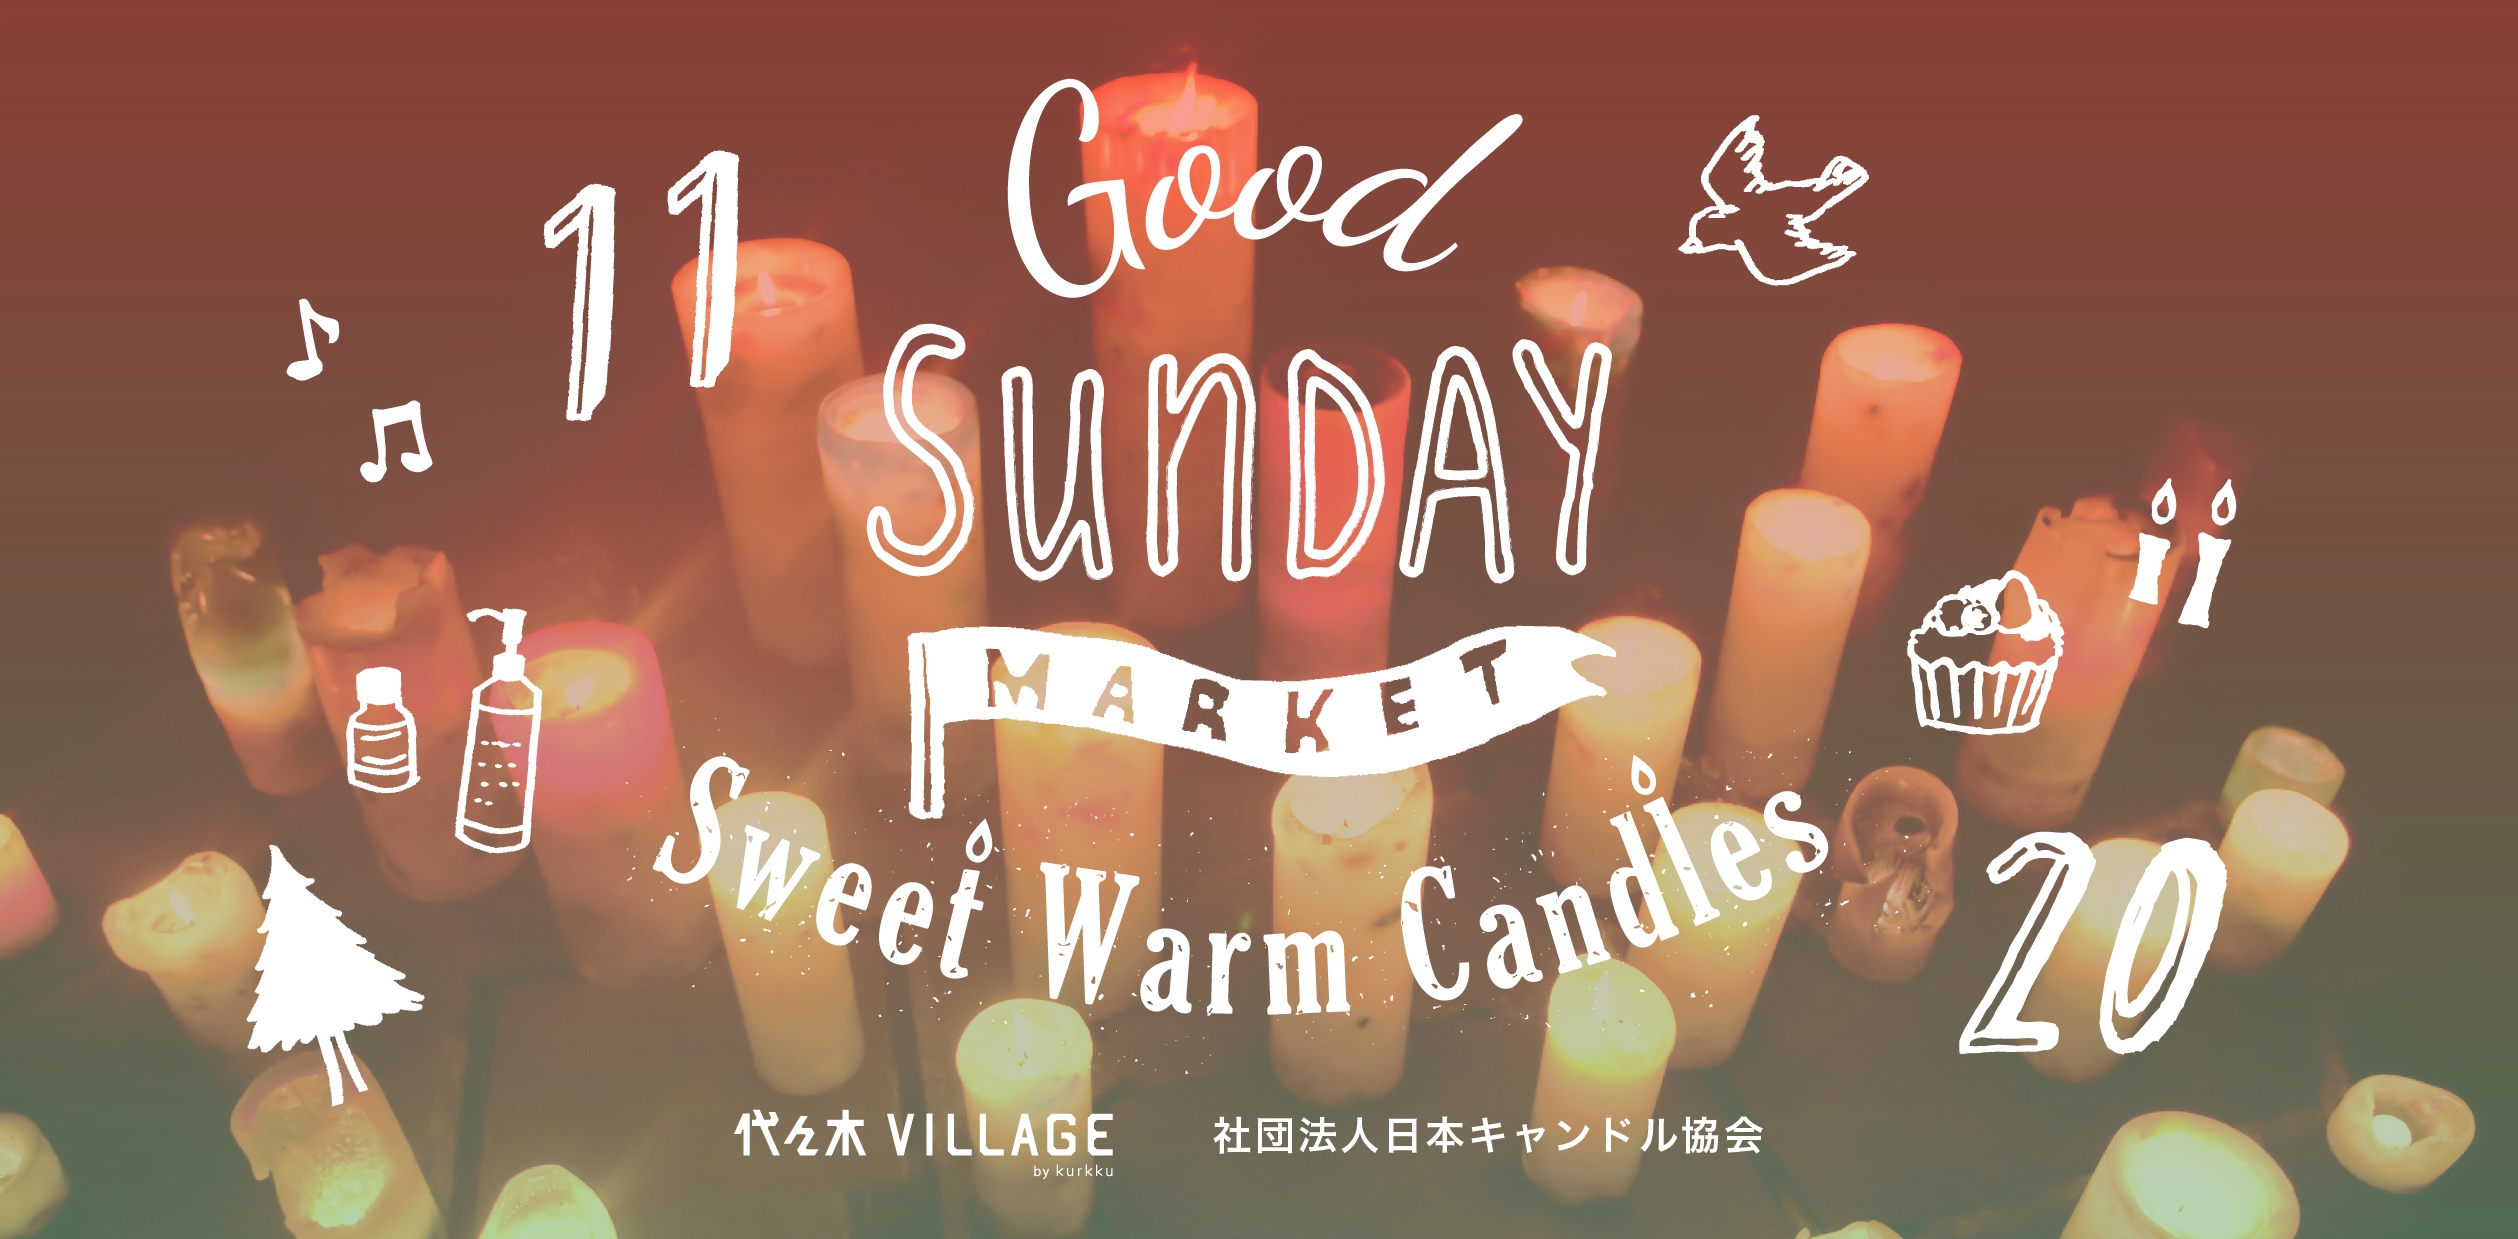 なるべくカラダに良いものを 無理なく 楽しく 16年11月日 Good Sunday Market Sweet Warm Candles を開催 株式会社kurkkuのプレスリリース